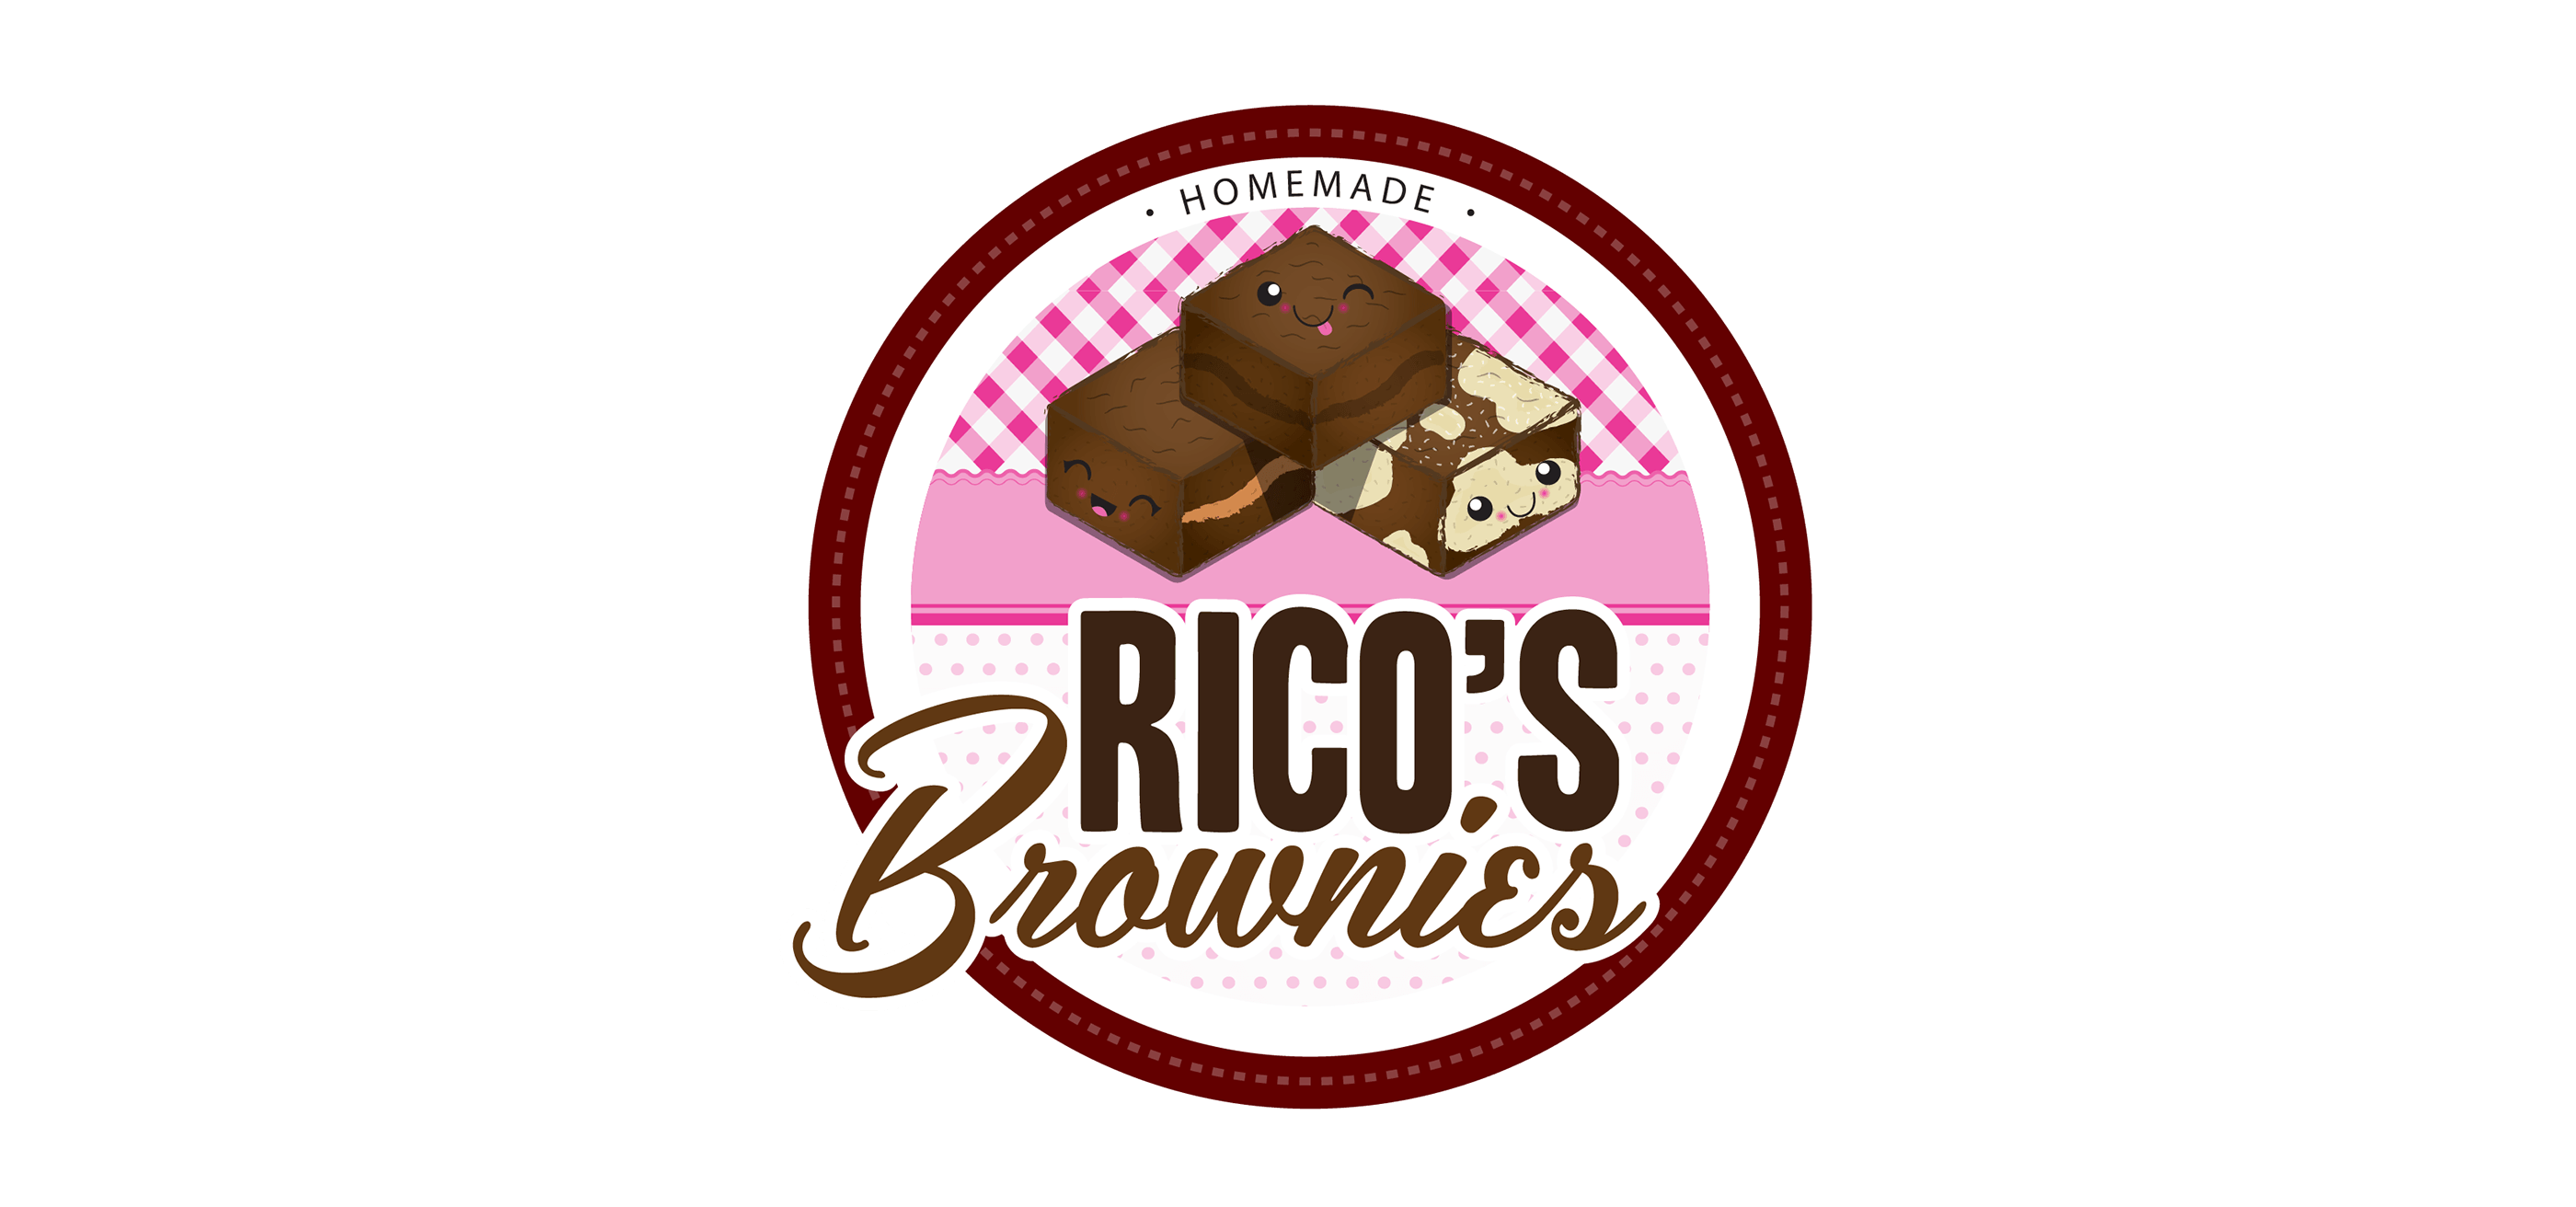 Brownie Logo - Rico's Brownies Branding on Behance